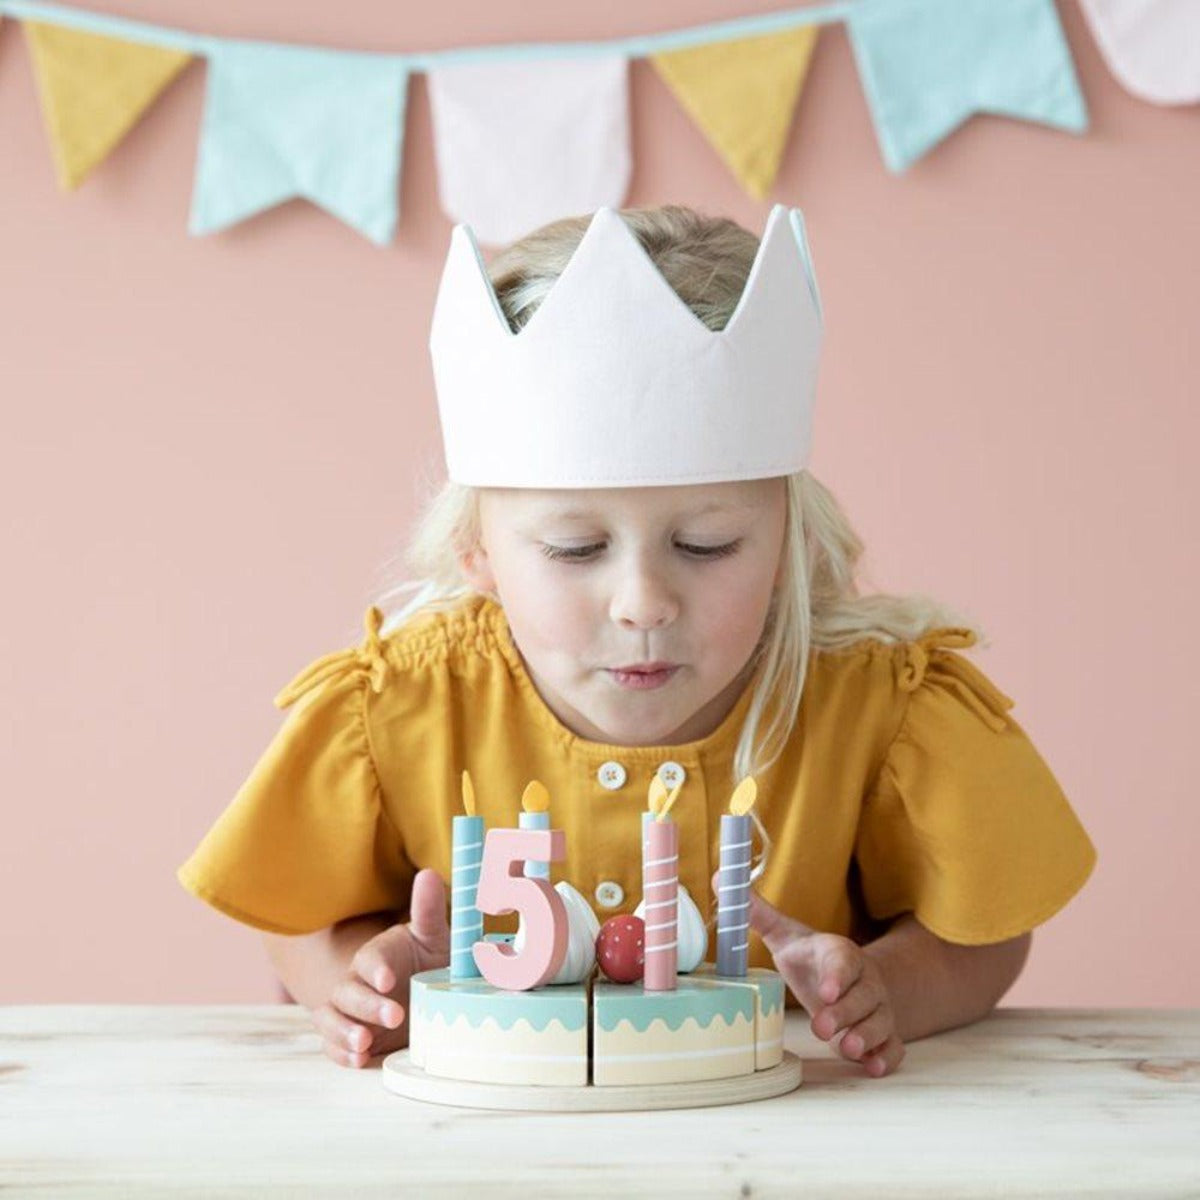 Visuel une petite fille souffle ses bougies pour ses 5 ans. gateau d'anniversaire de la marque Little Dutch.